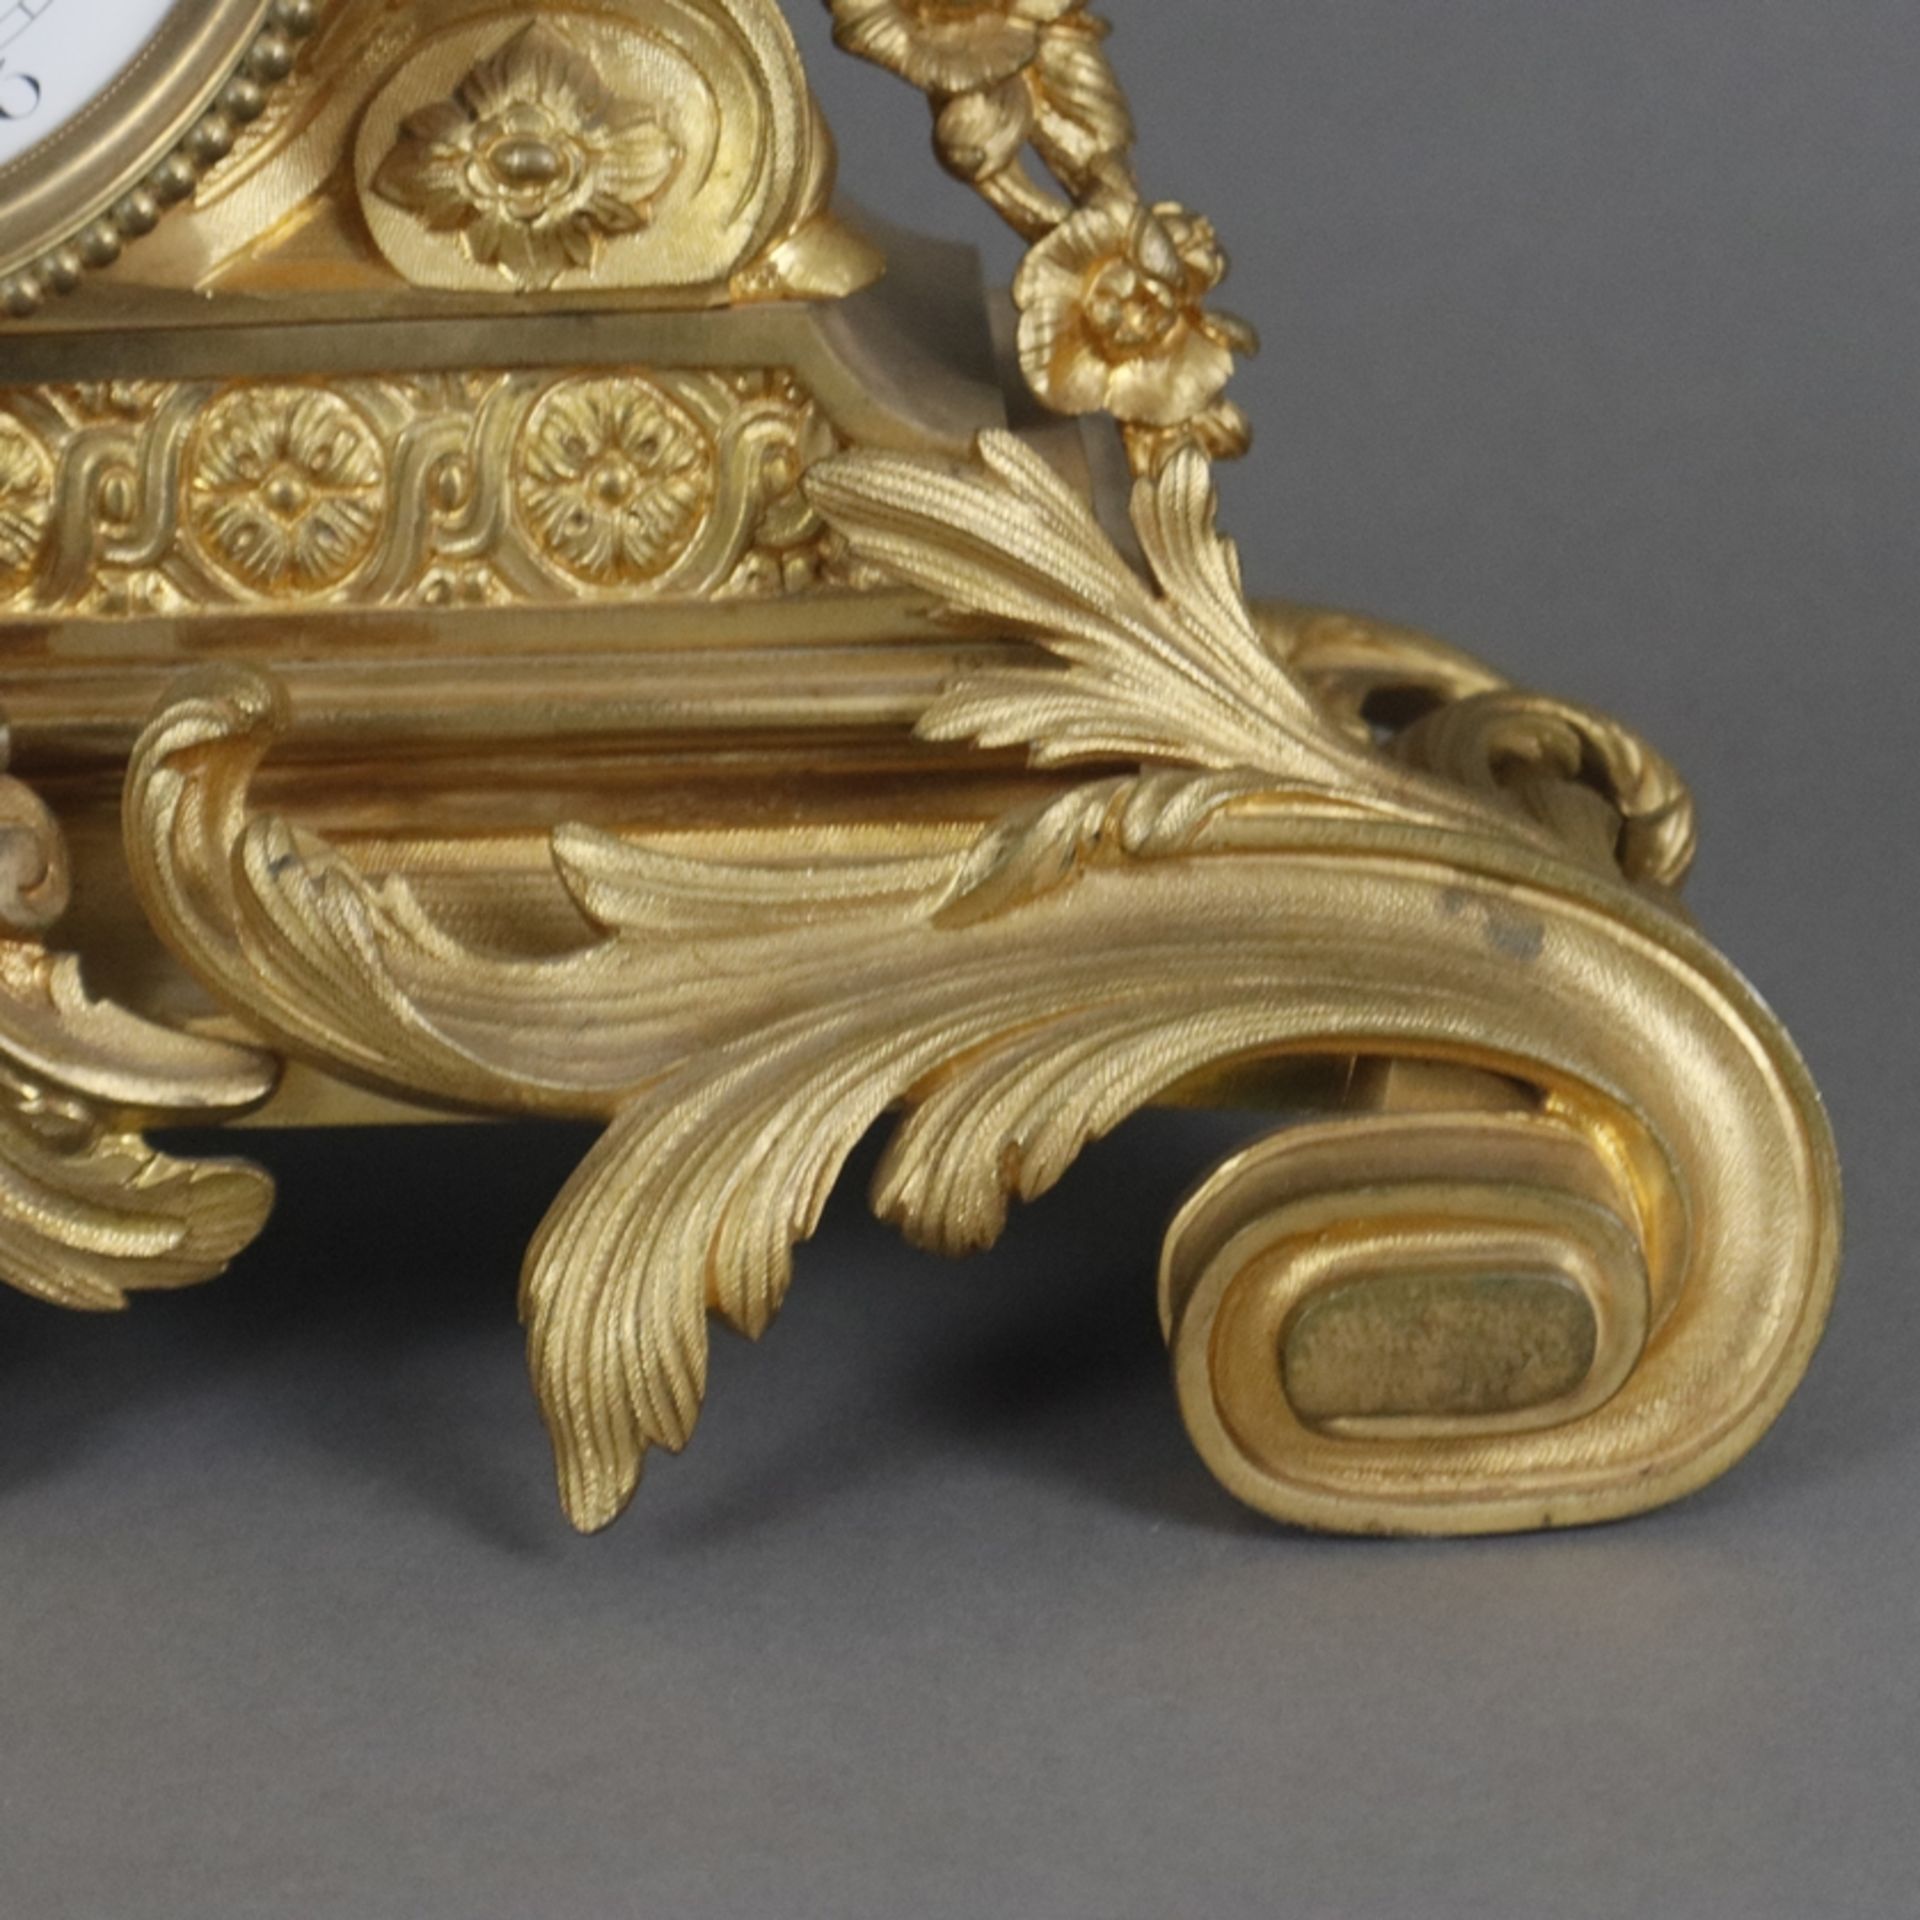 Prunkvolle Pendule - Paris, Frankreich, um 1800, vergoldetes Bronzegehäuse, reich verziert mit Akan - Image 10 of 15